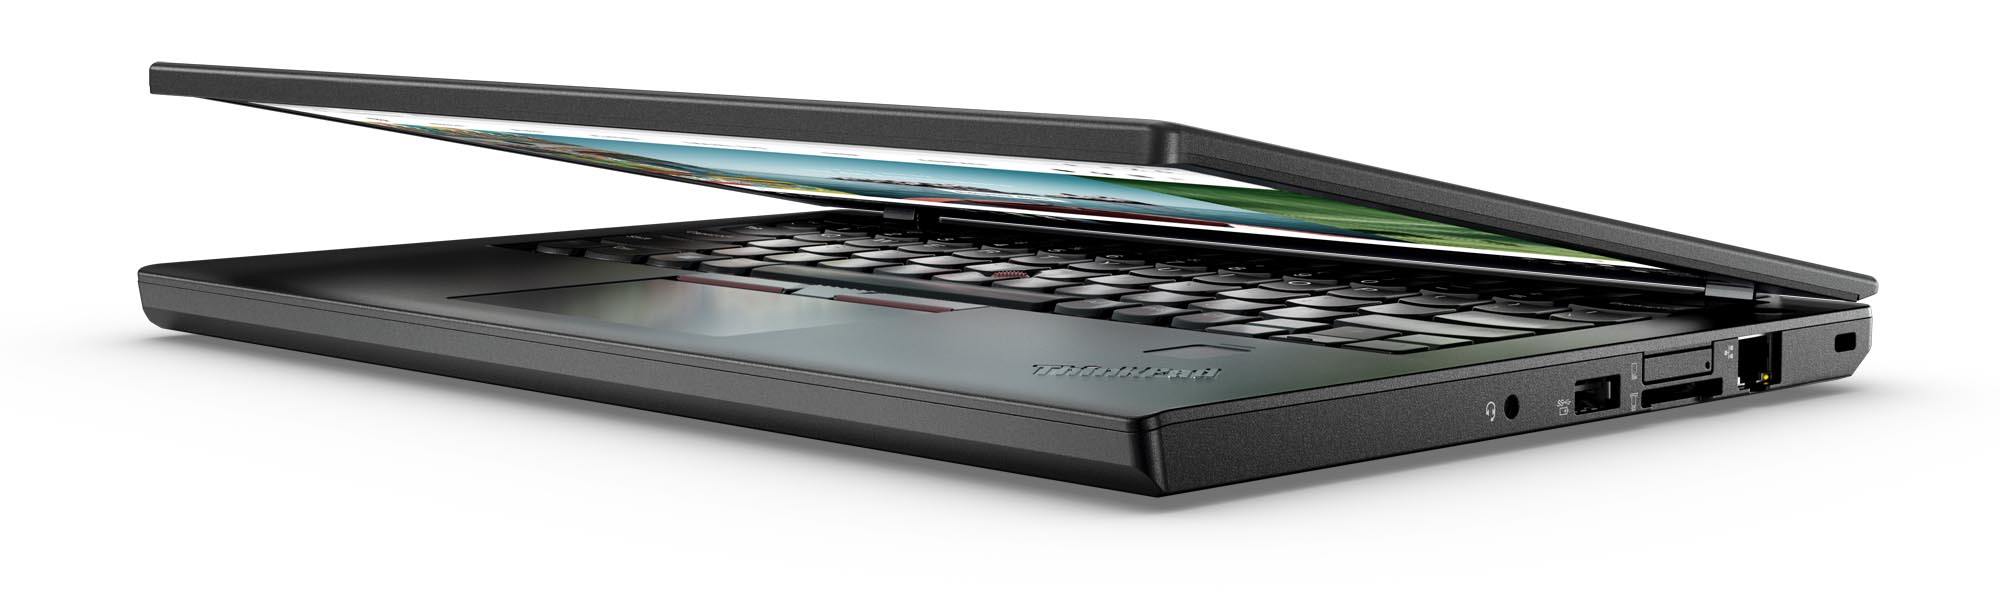 Lenovo Thinkpad X270 Has Crazy Long Battery Life Slashgear